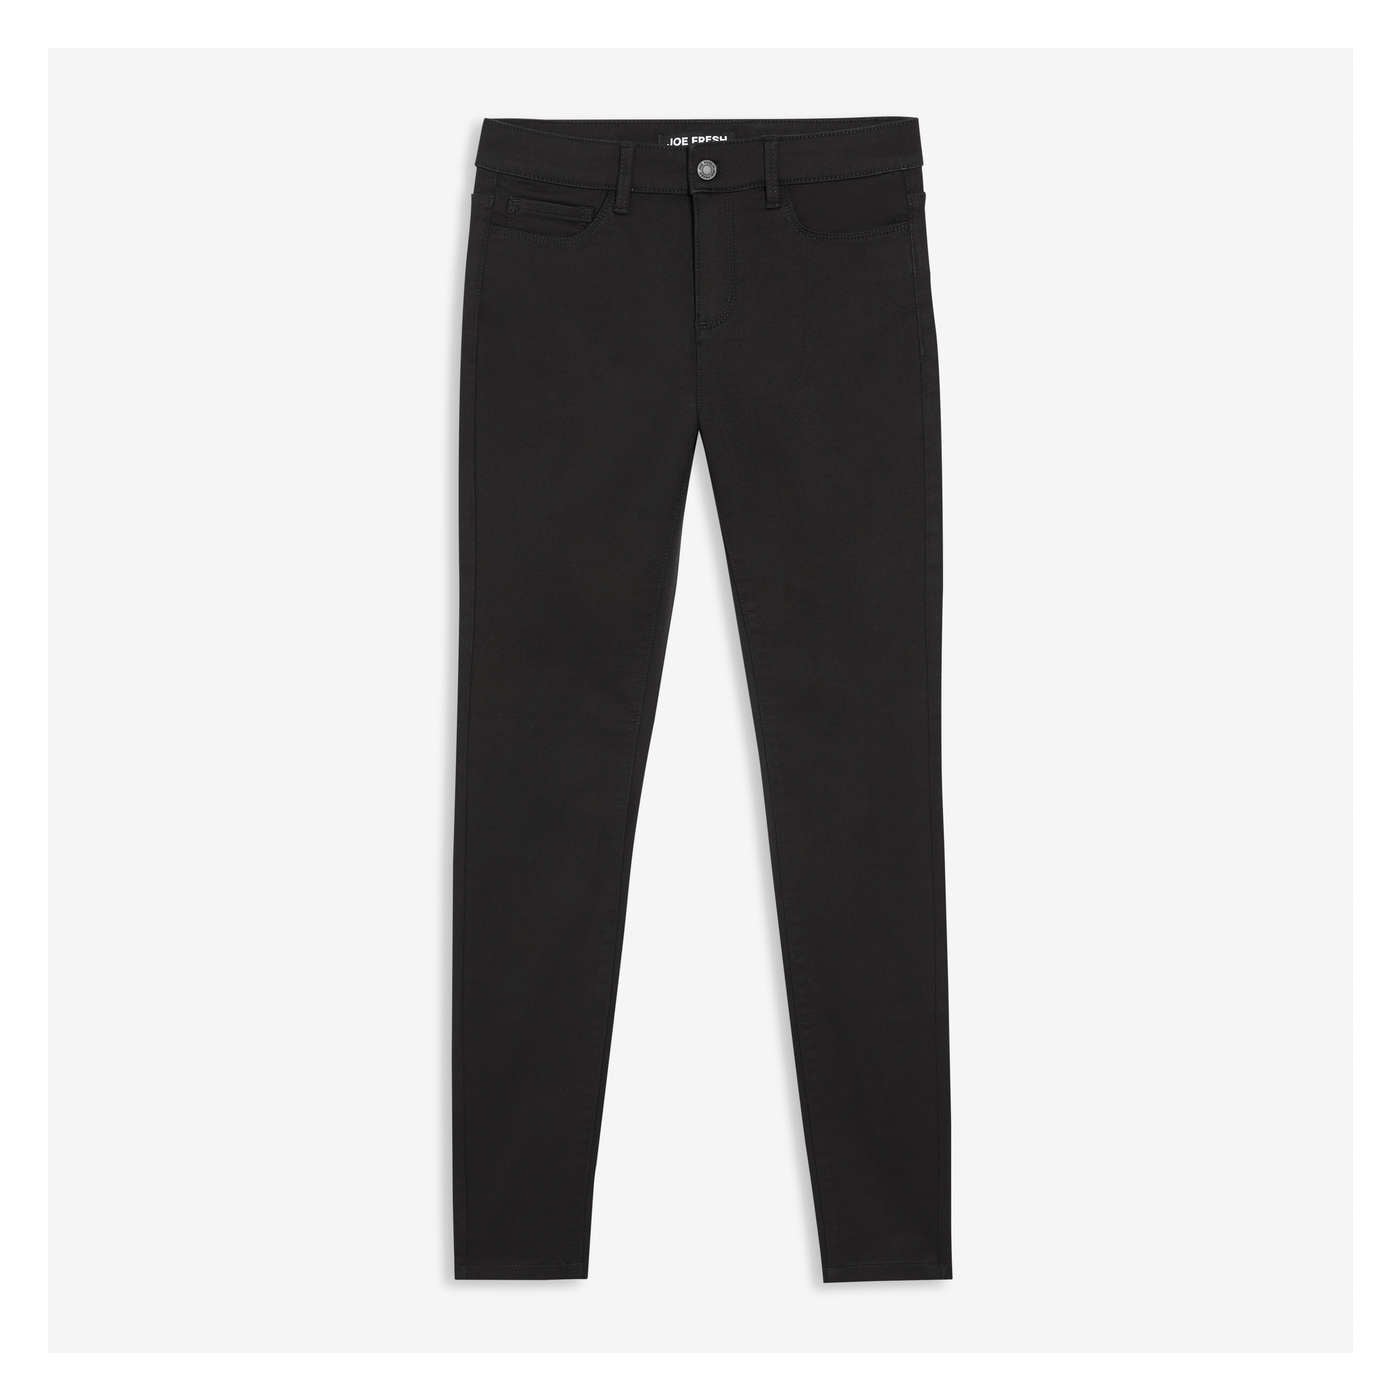 Hue Studio S Black Pull On Jegging Jeans Pants Elastic Waist, Cutoff Hem  NWT